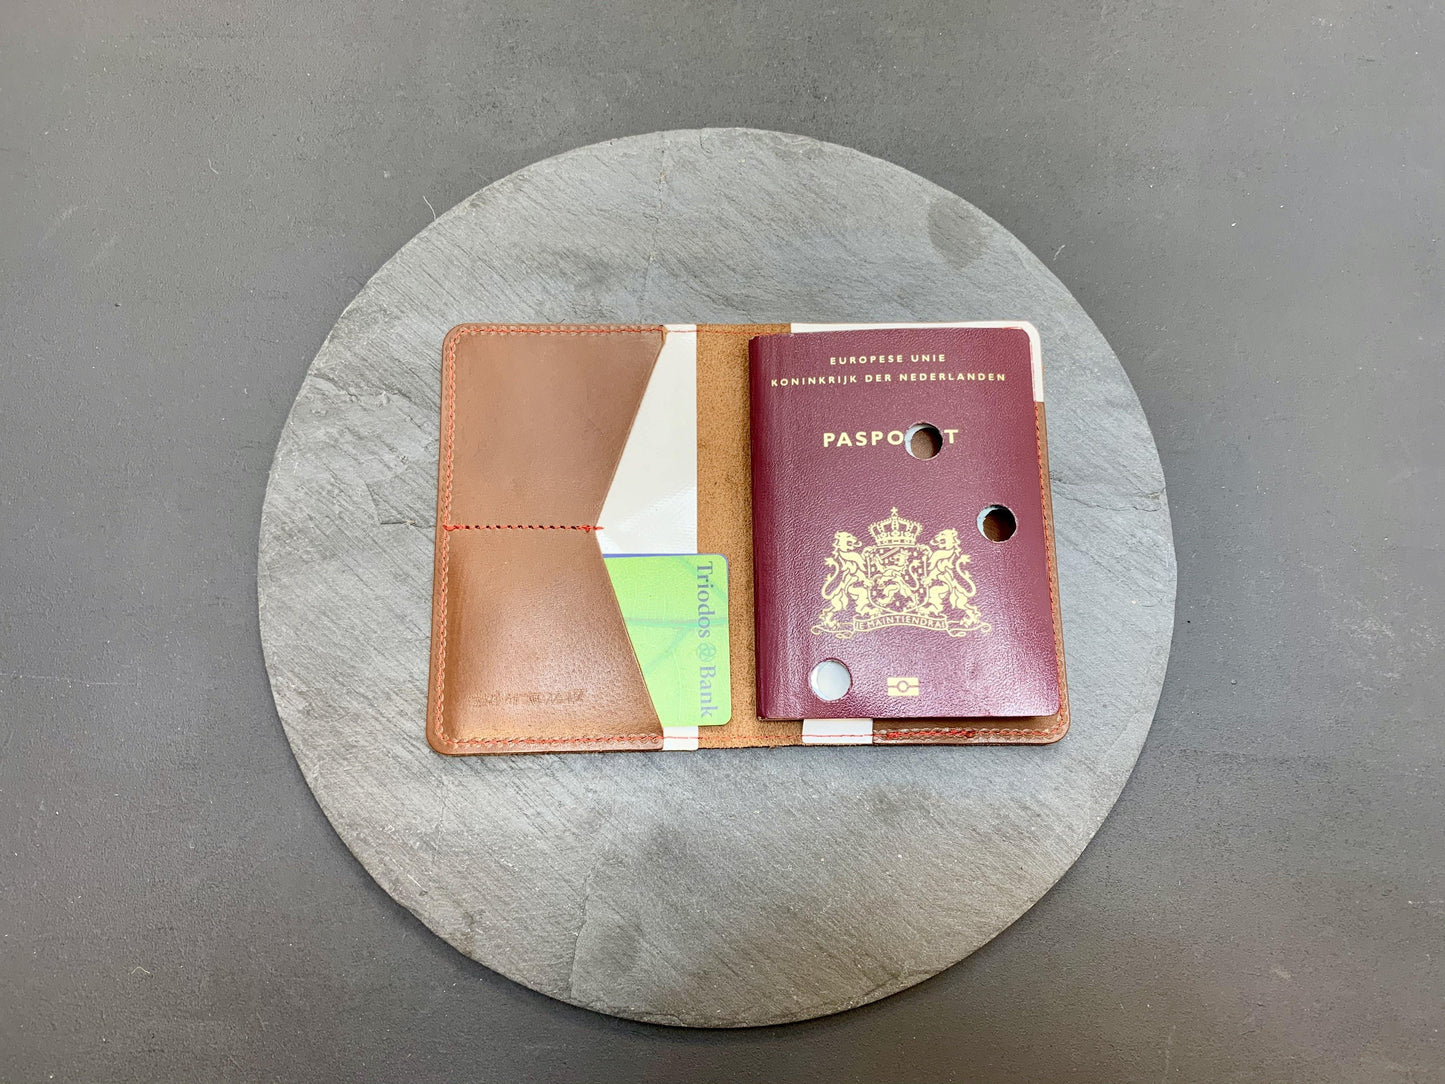 NOWASTE design - full grain leather passportholder